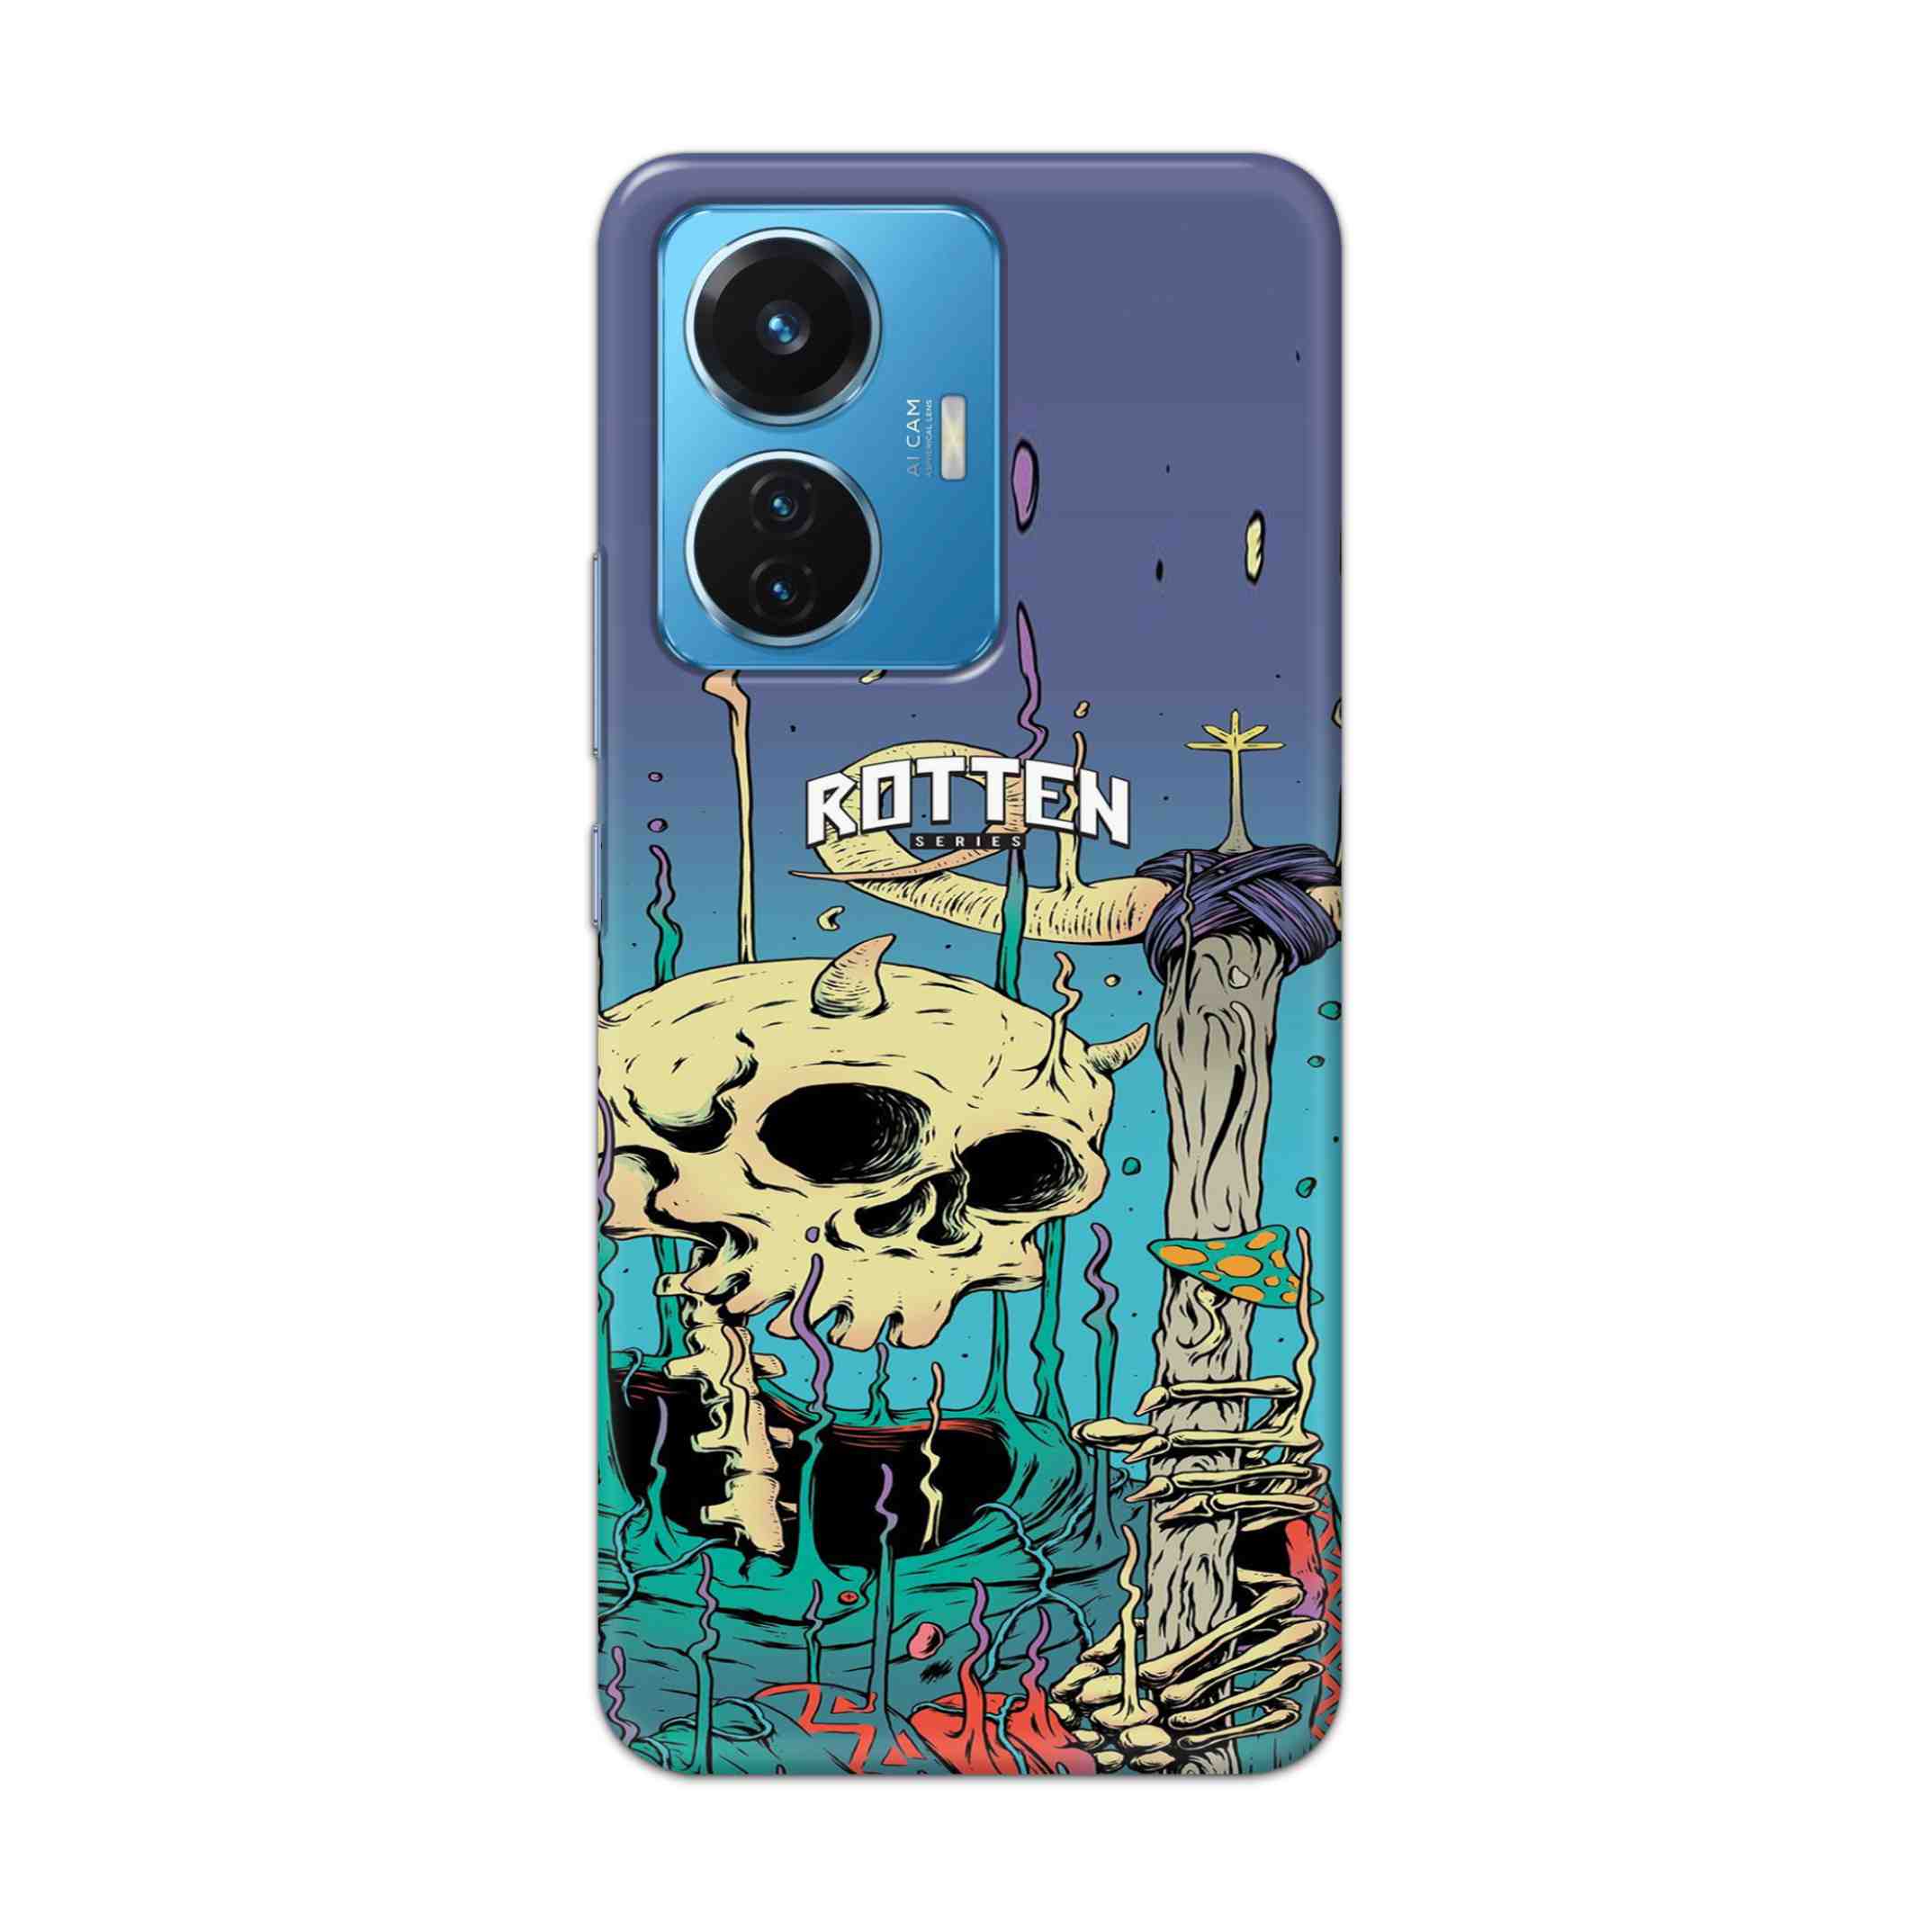 Buy Skull Hard Back Mobile Phone Case Cover For Vivo T1 44W Online